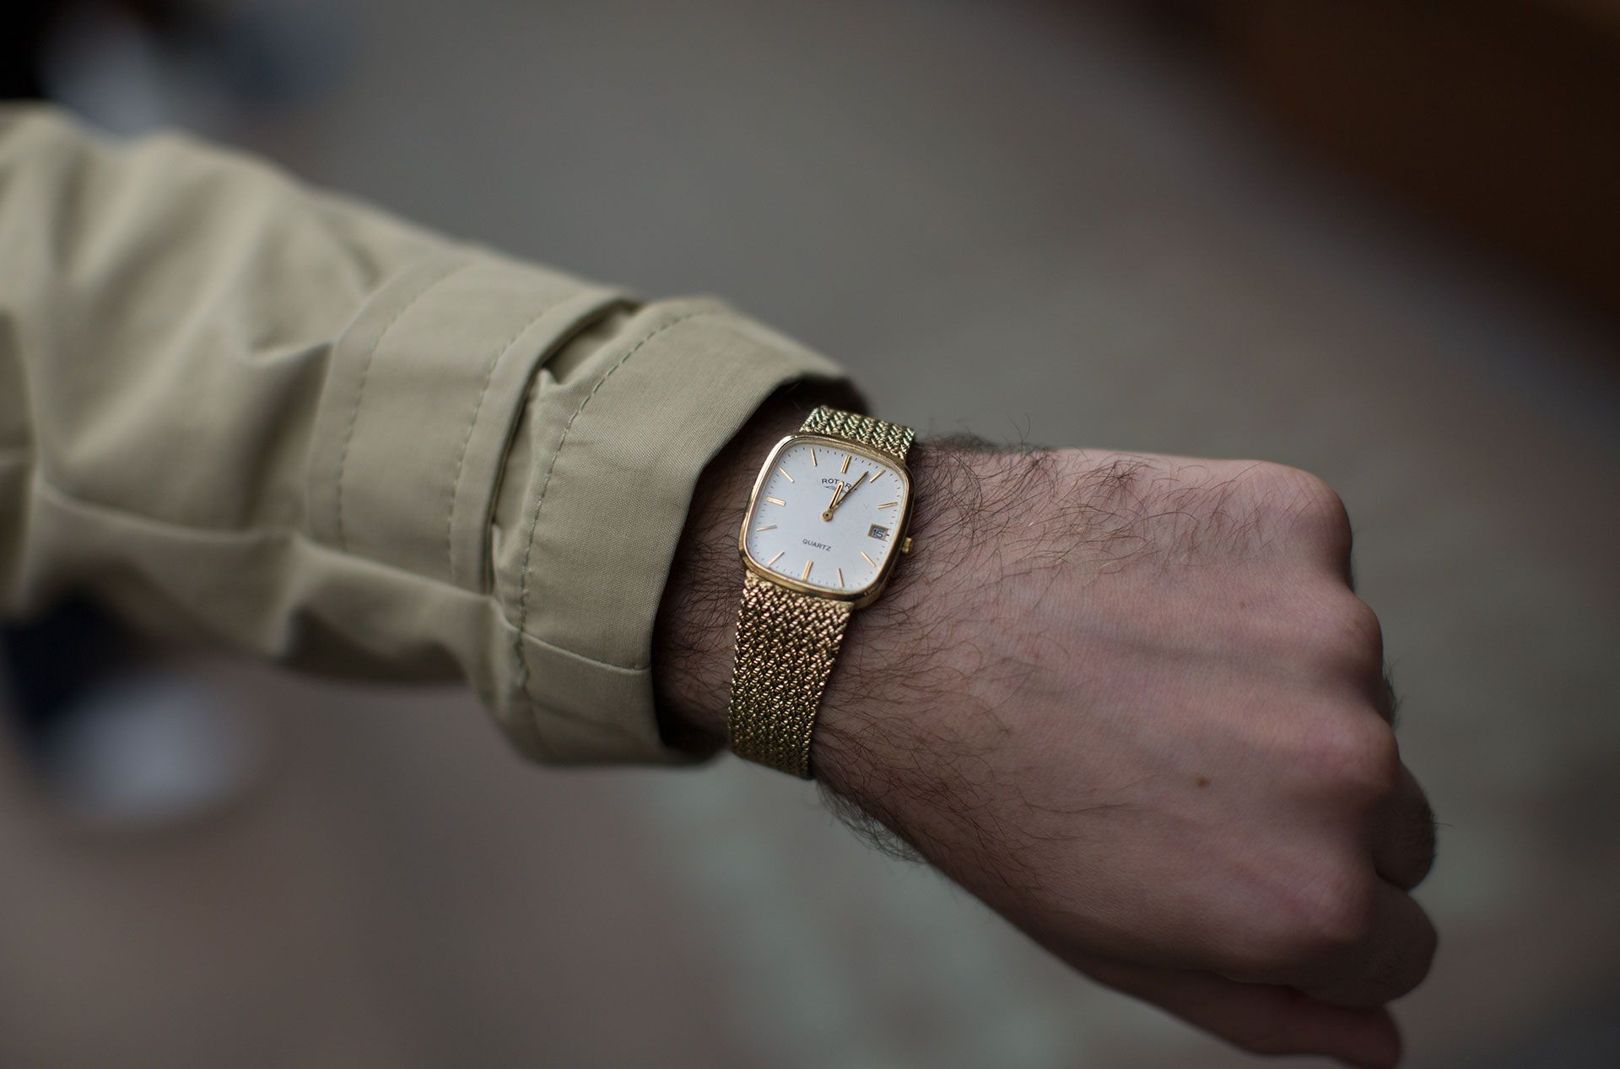 Tom, 24
我花30在eBay上买的，它现在看起来更像一块蛮时尚的腕表，我戴着它今天去面试了。